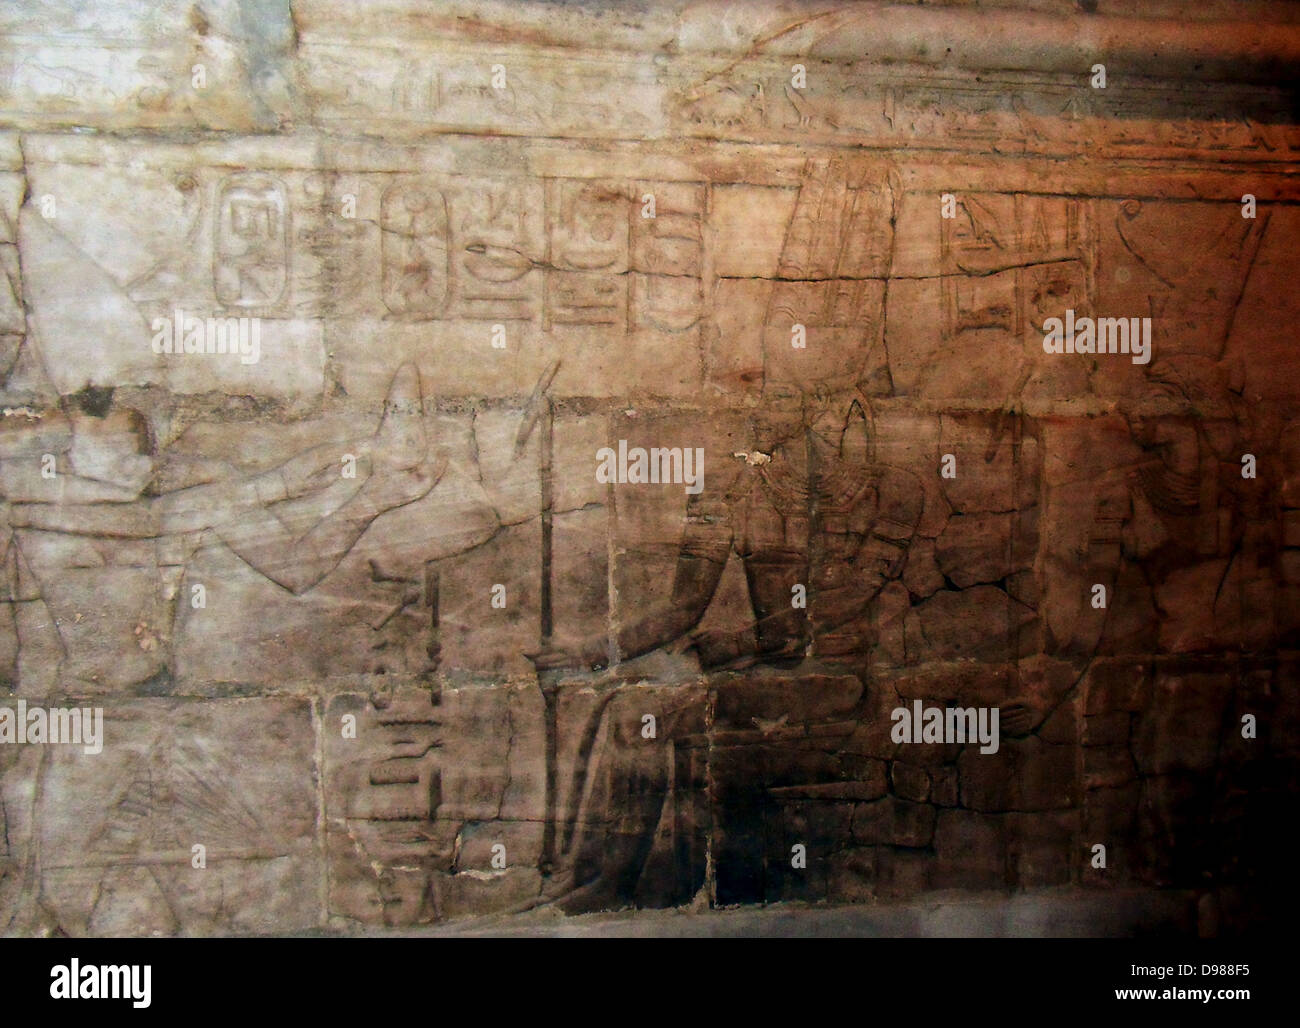 East Wall aus dem Heiligtum von taharqa der dritte in der Reihe der Kushite Könige von Ägypten, dessen Macht von Ihrer ursprünglichen Nubien in ganz Ägypten ausgedehnt, die sie als die Pharaonen der 25. Dynastie (712-657 v. Chr.) regierte. Innerhalb der Kawa Tempel stand die kleine in sich geschlossene Schrein, die jetzt im Ashmolean Museum ist. Taharqa und die Götter von Theben. Er bietet "ein weißes Brot zu seinem Vater "Amon-Re, begleitet von Mut. Stockfoto